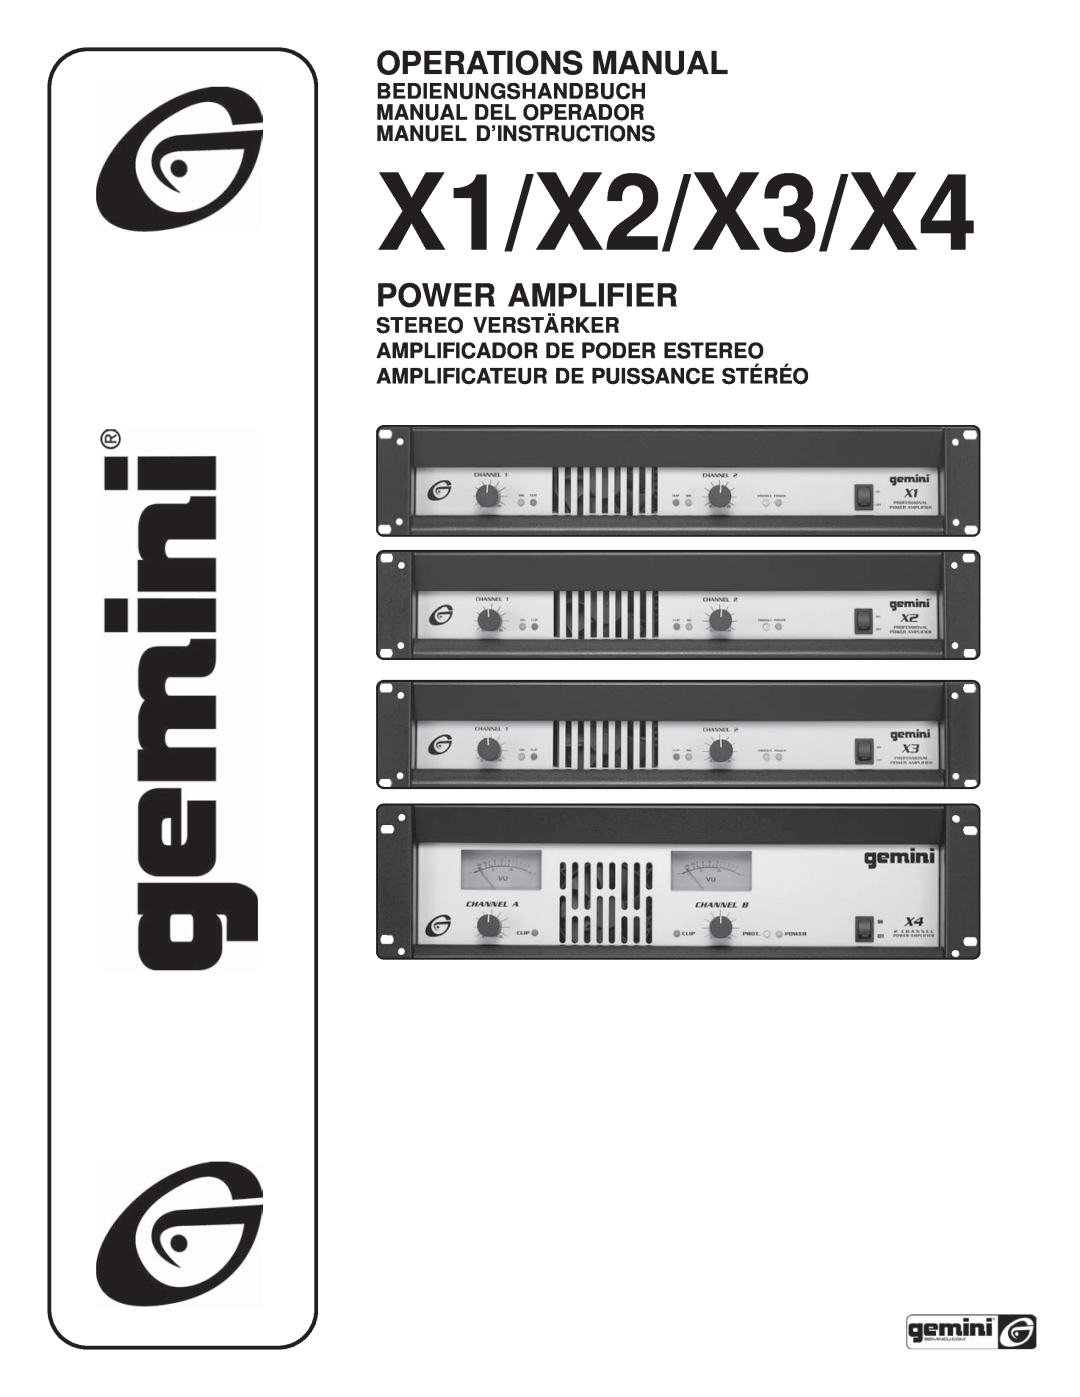 Gemini X4 manual Bedienungshandbuch Manual Del Operador, Manuel D’Instructions, Amplificateur De Puissance Stéréo, Page 